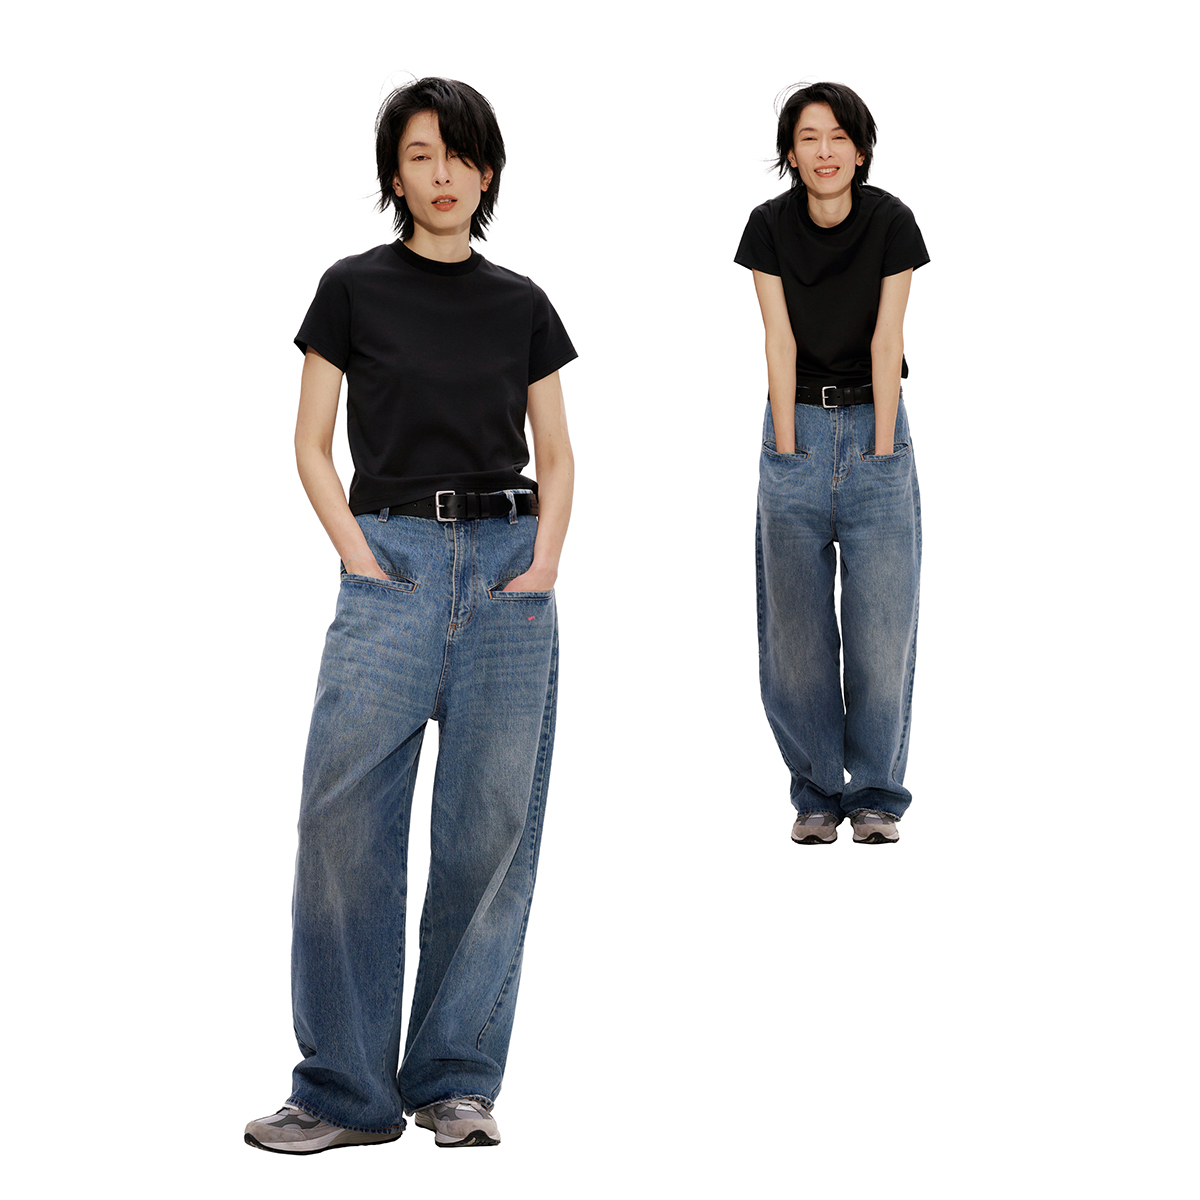 FaxCopyExpress Denim03 紧身喇叭牛仔裤Fax Flared Jeans - Taobao